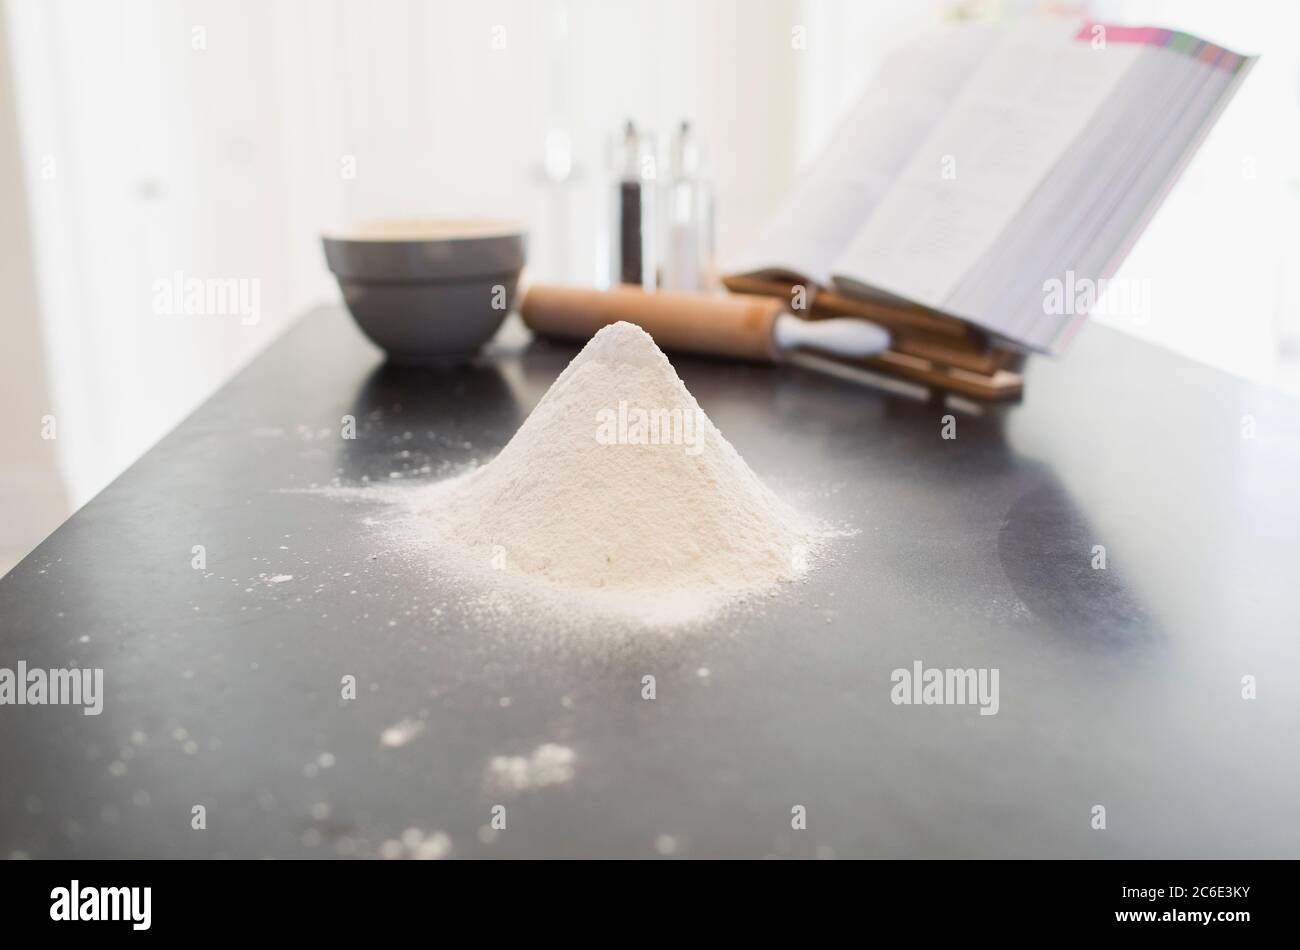 Flour heap on kitchen counter Stock Photo